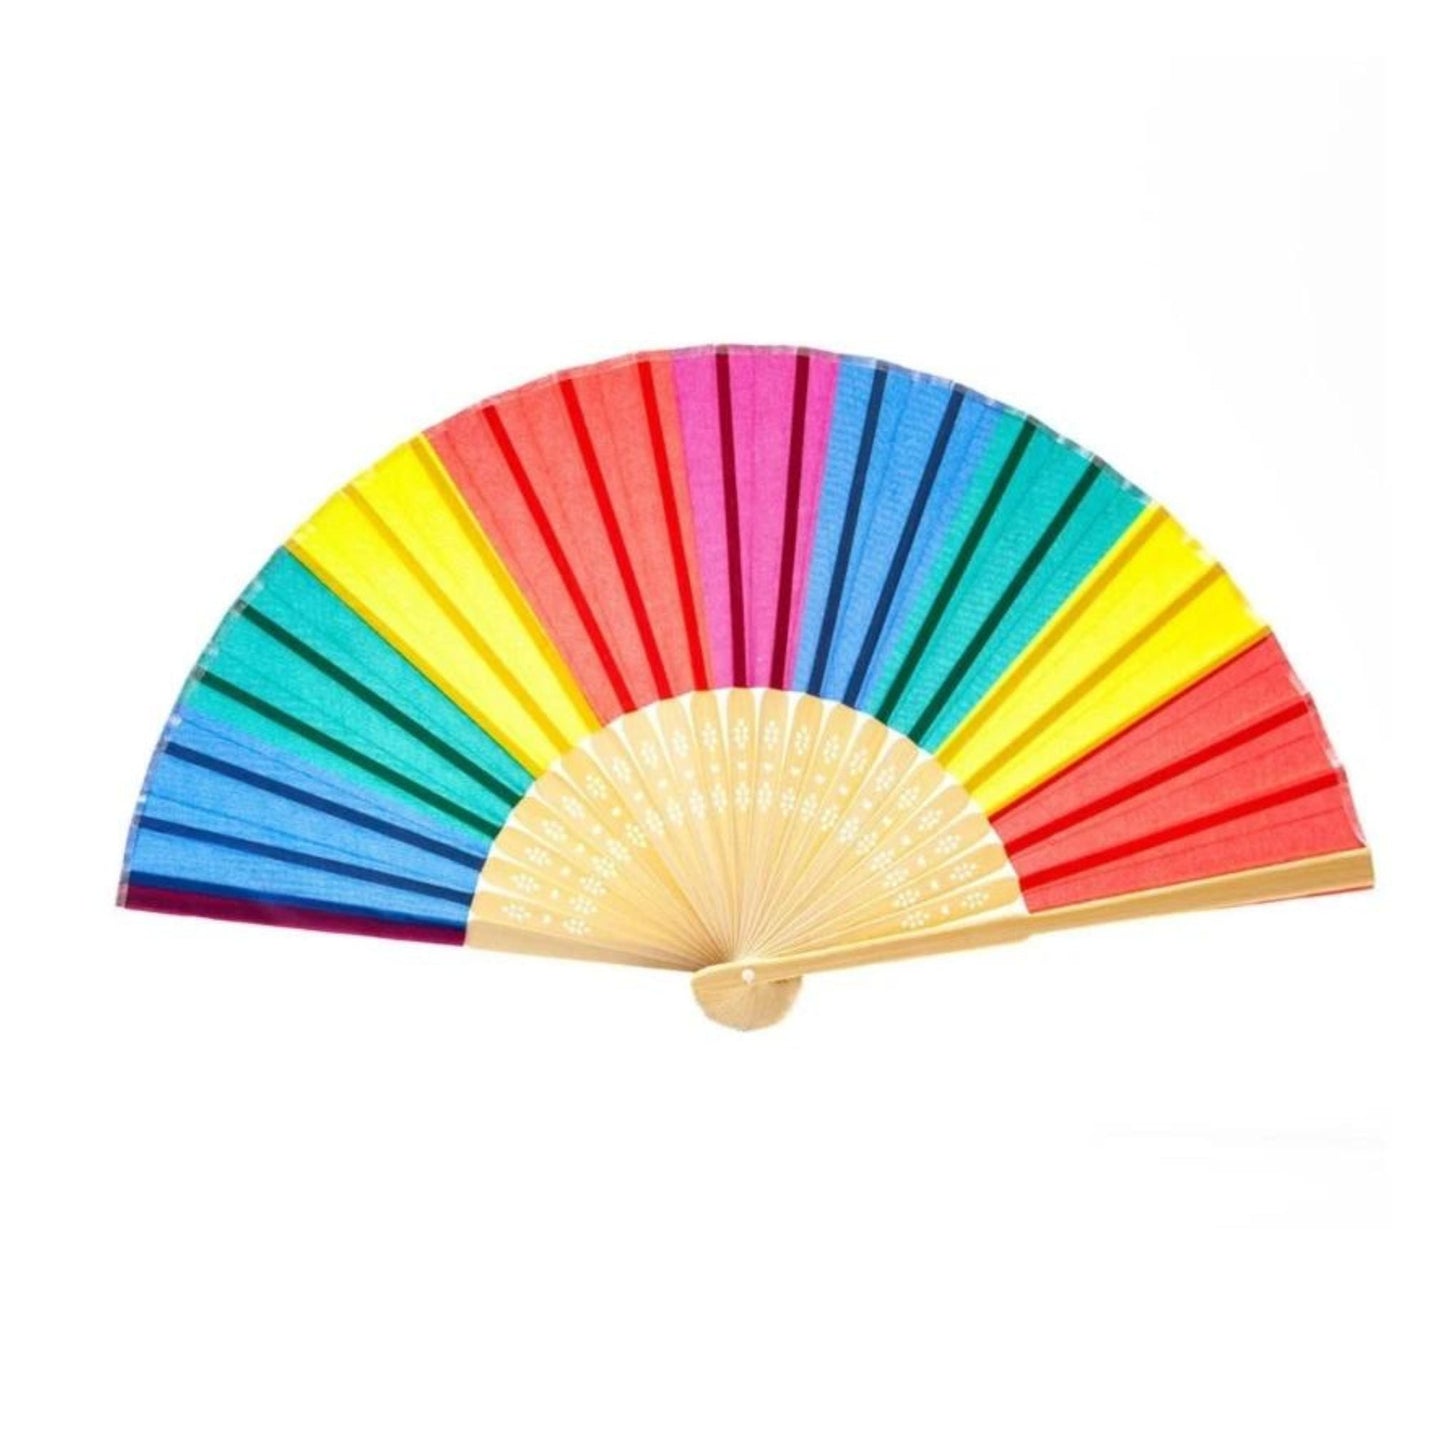 I'M A FAN OF THE GAY COMMUNITY Rainbow Folding Pride Fan | LGBTQ Pride Item, Parade Accessory